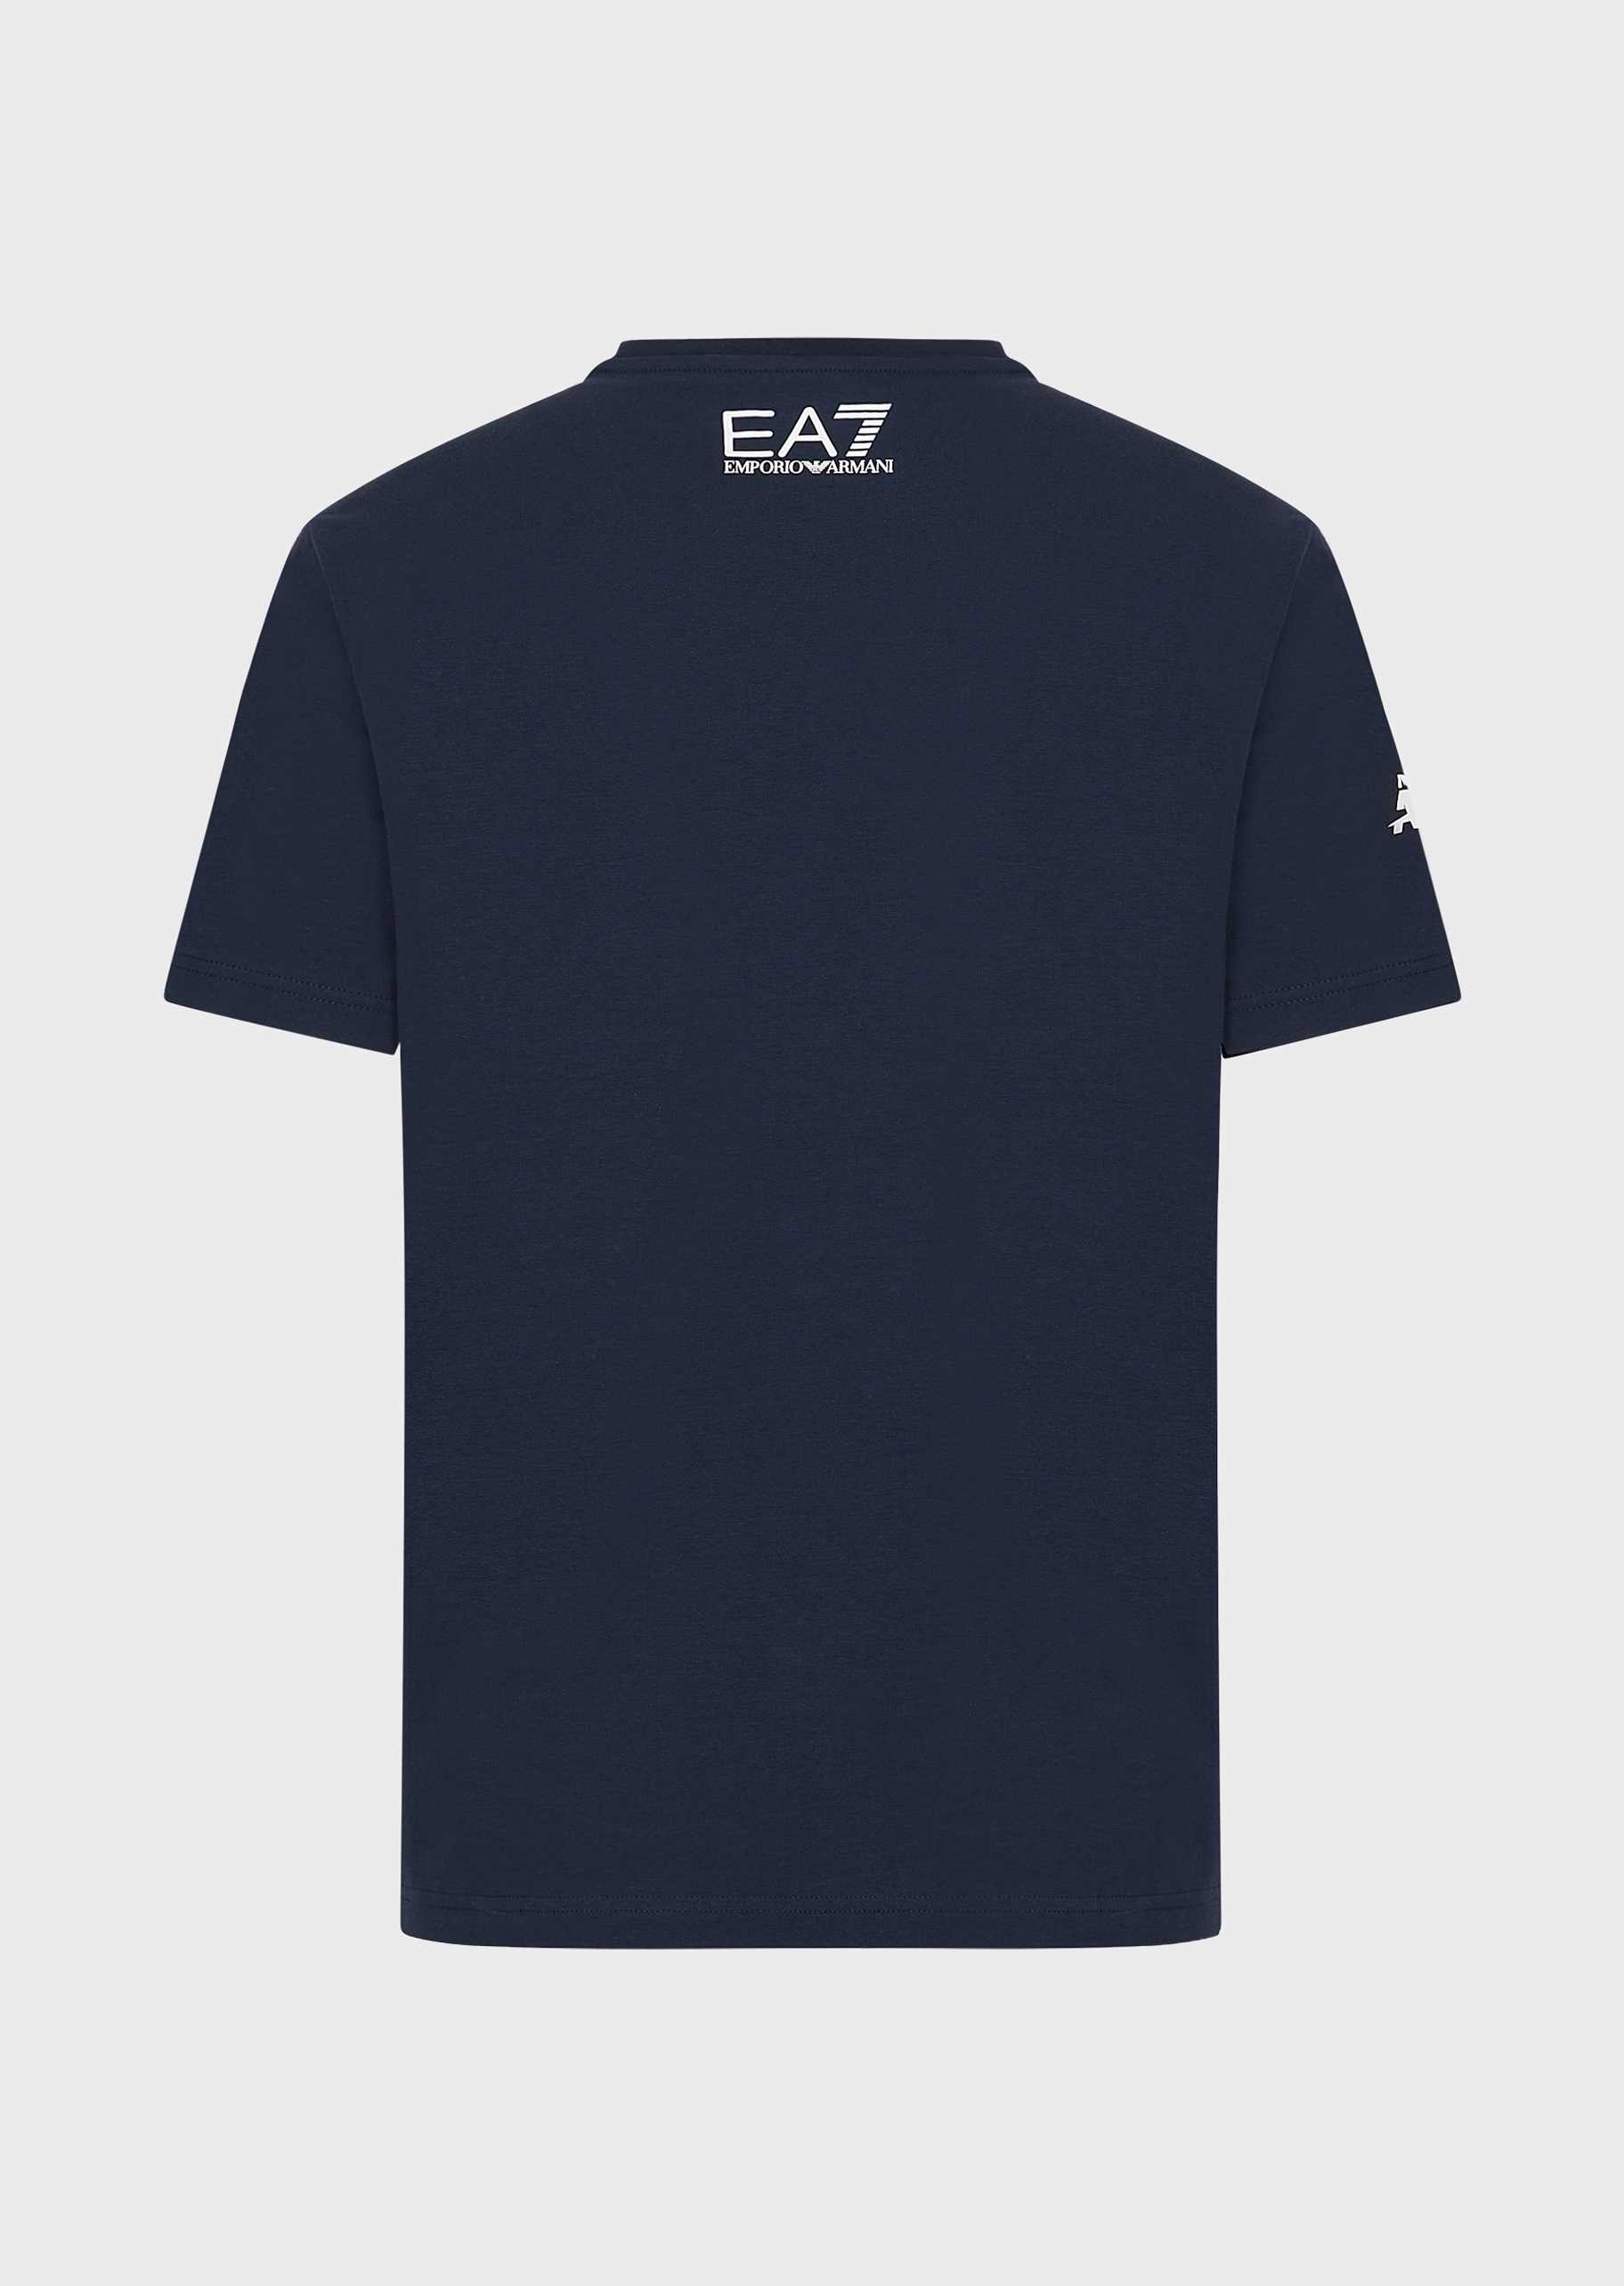 EA7 撞色标识短袖T恤